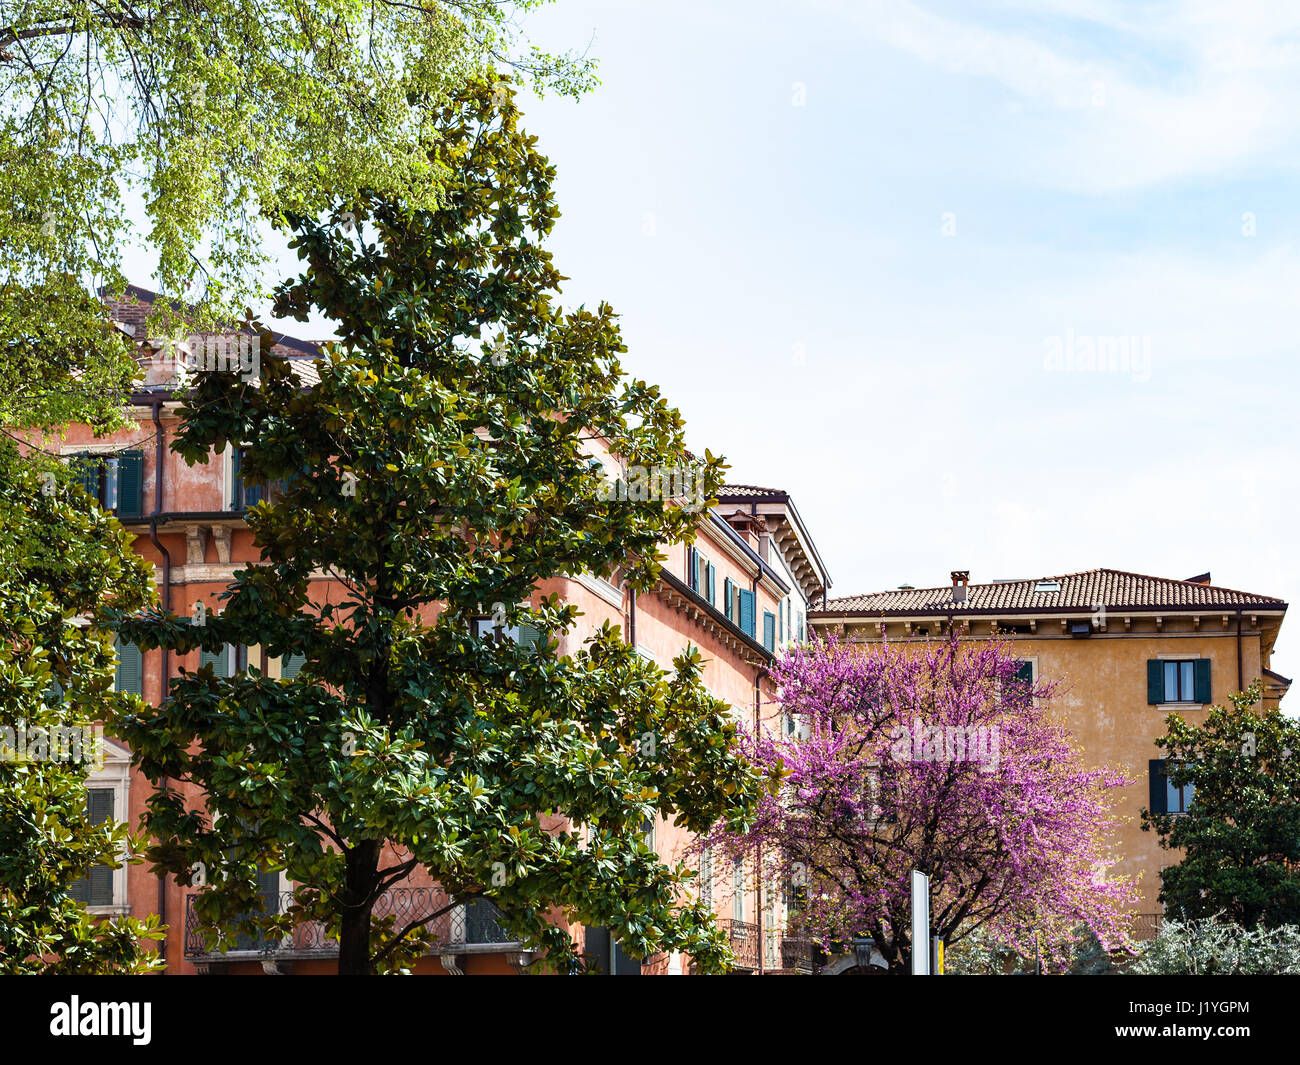 Voyage d'Italie - les arbres urbains dans la ville de Vérone au printemps Banque D'Images